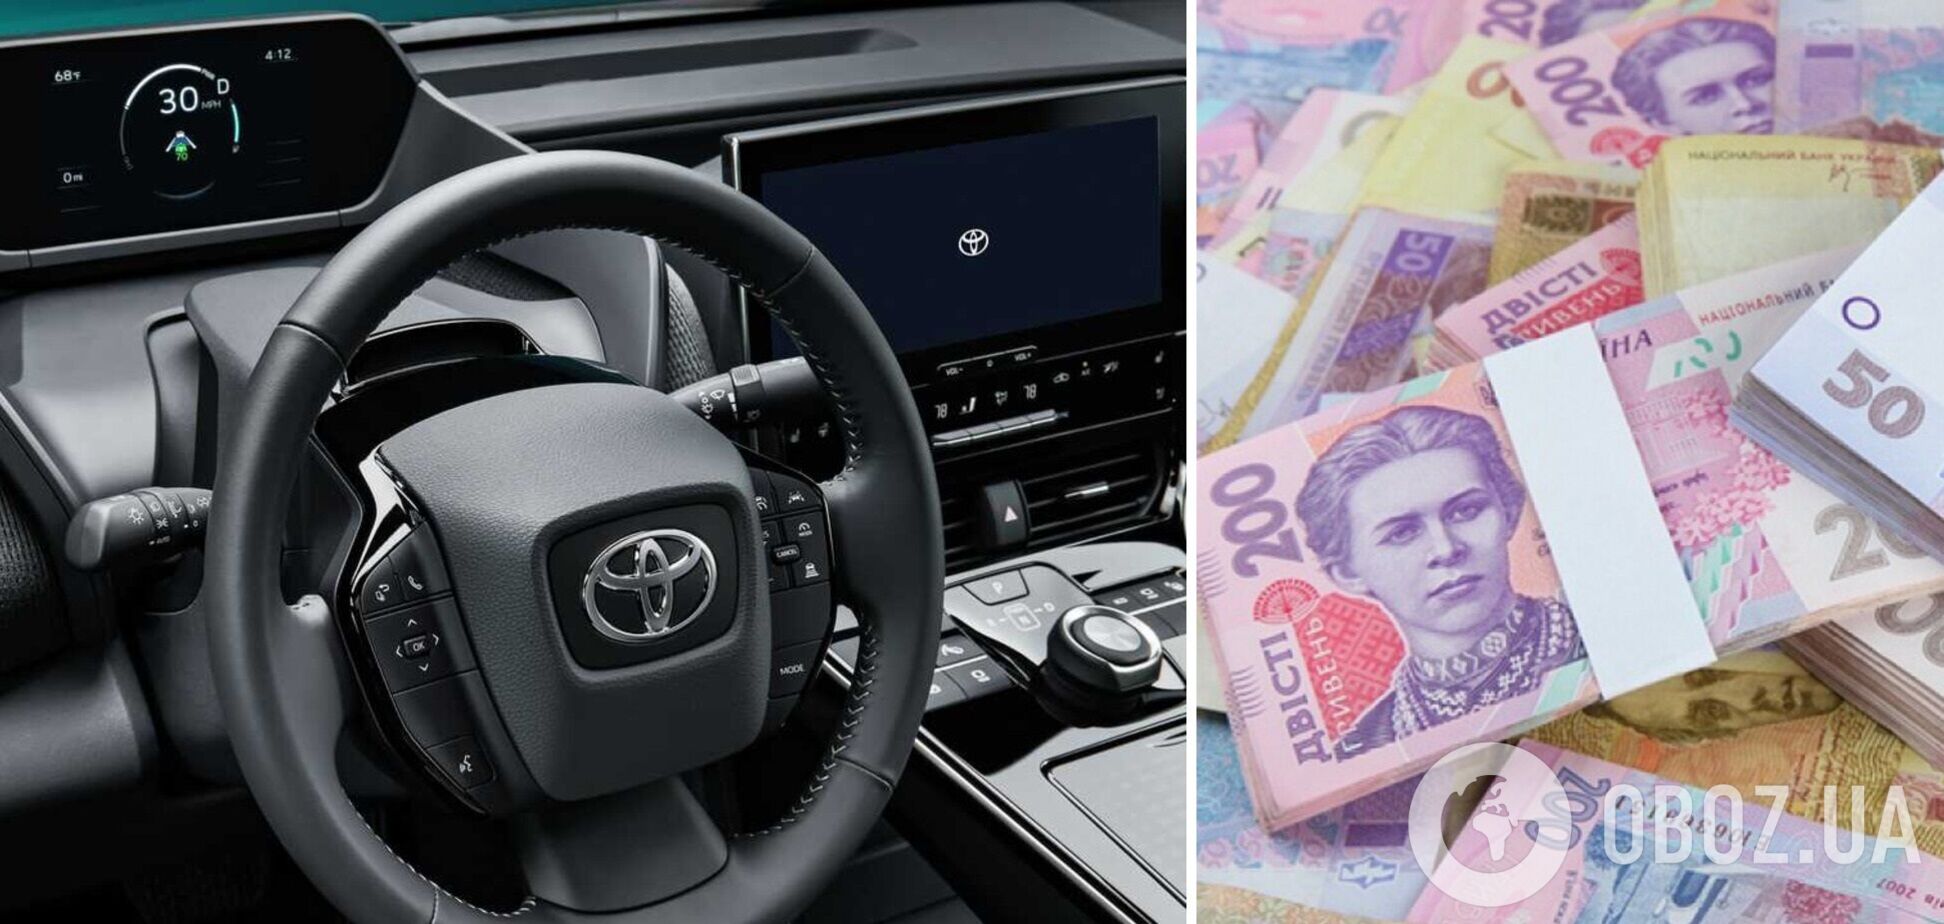 'Укргидроэнерго' купило внедорожник Toyota Land Cruiser за 3 миллиона 